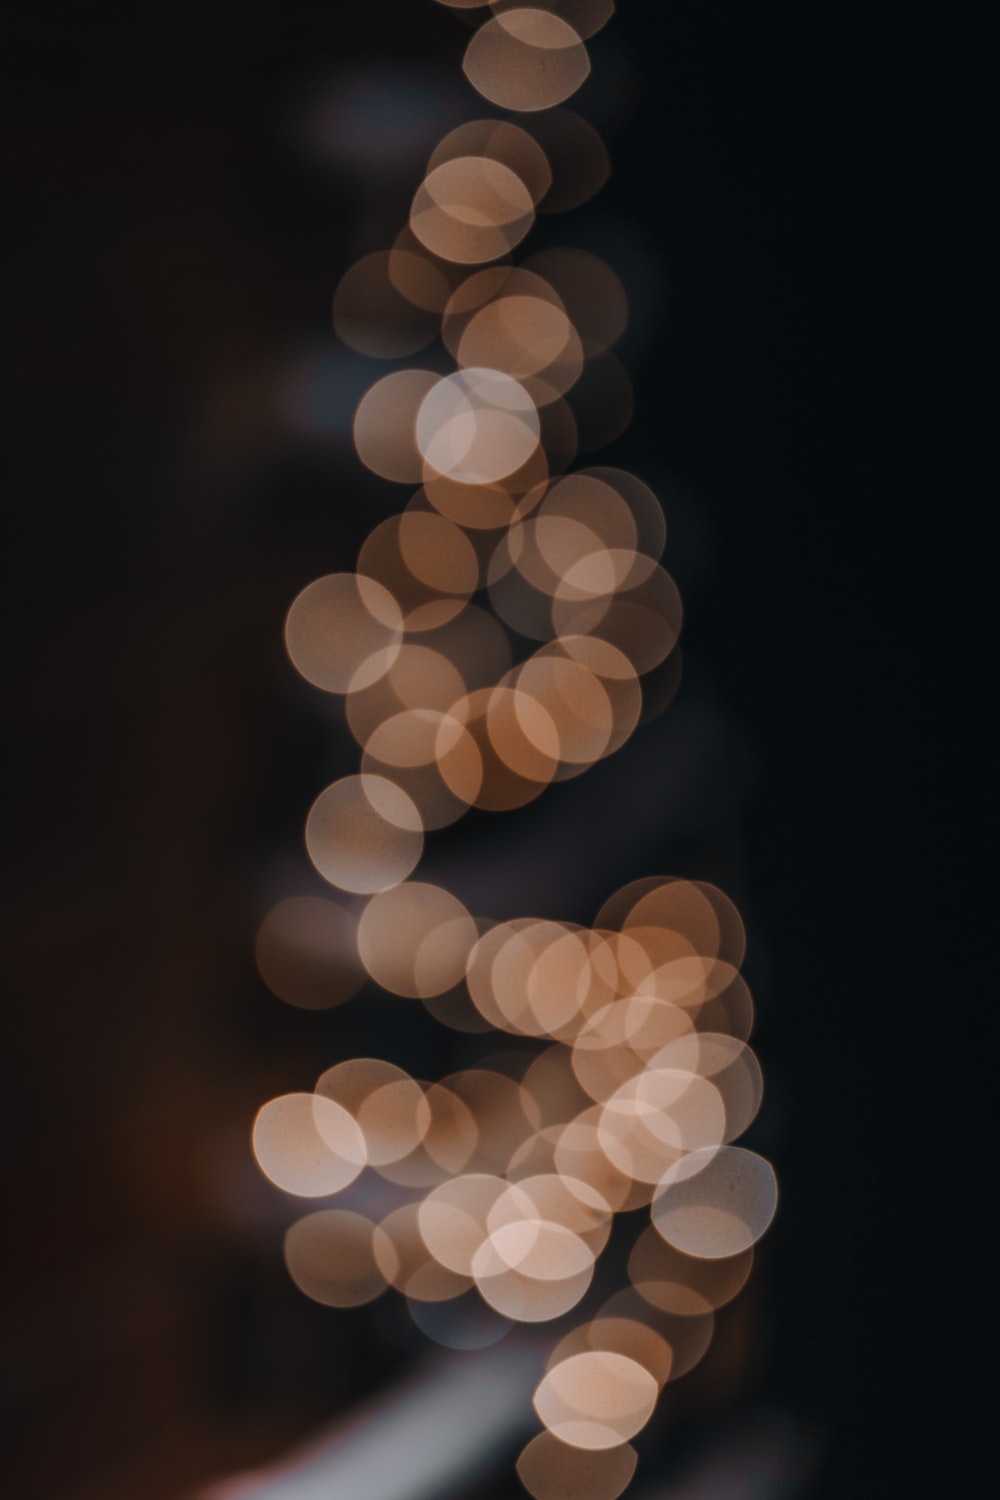 Blurred Lights Background